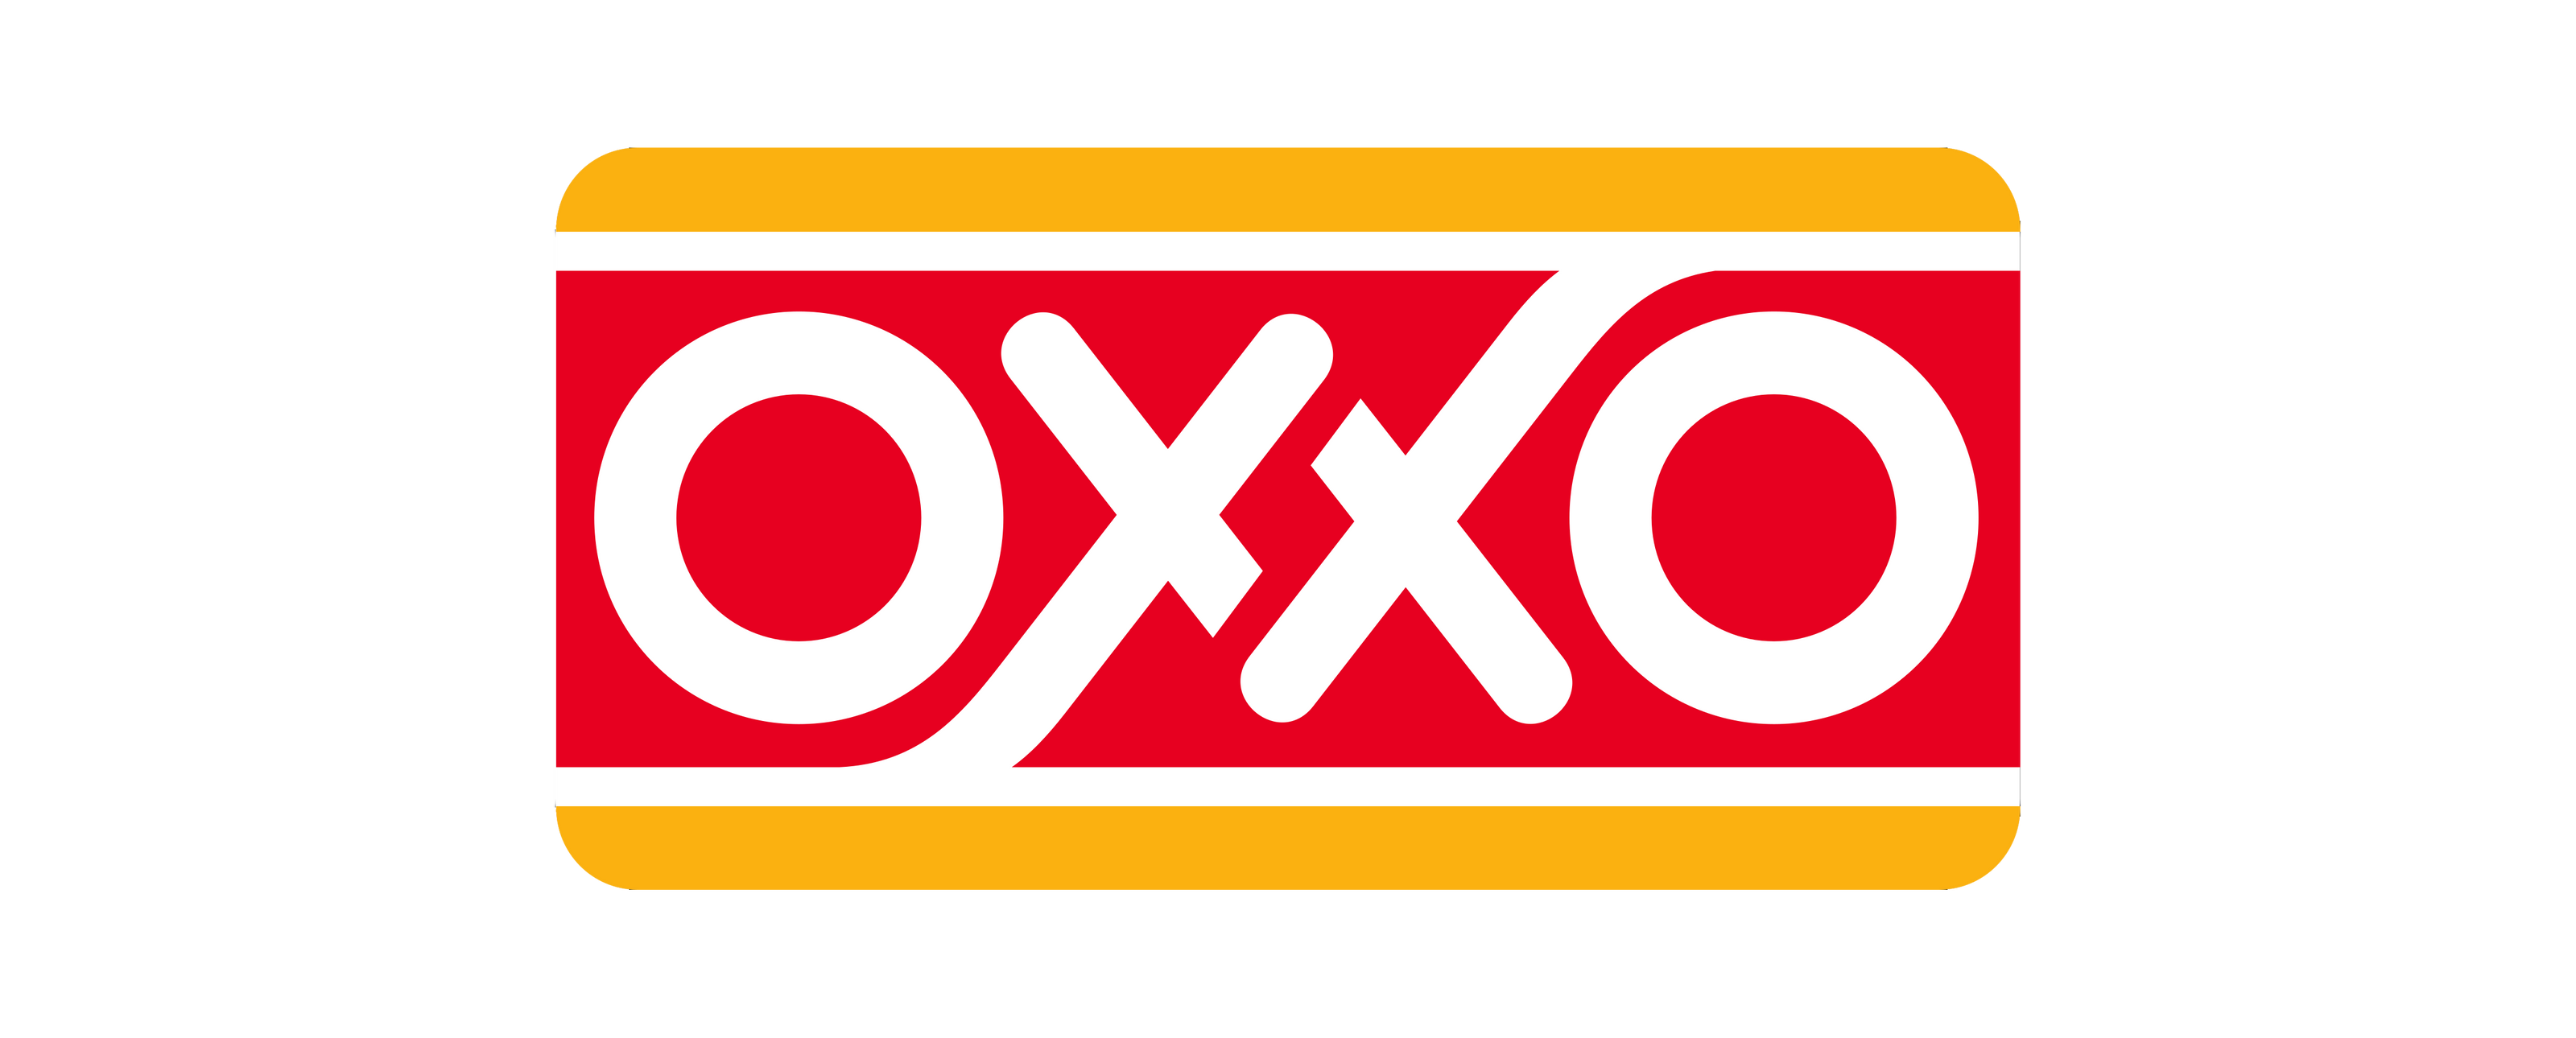 Shangs-Tienda deportiva-Formas de Pago-Efectivo en Tiendas de Conveniencia OXXO